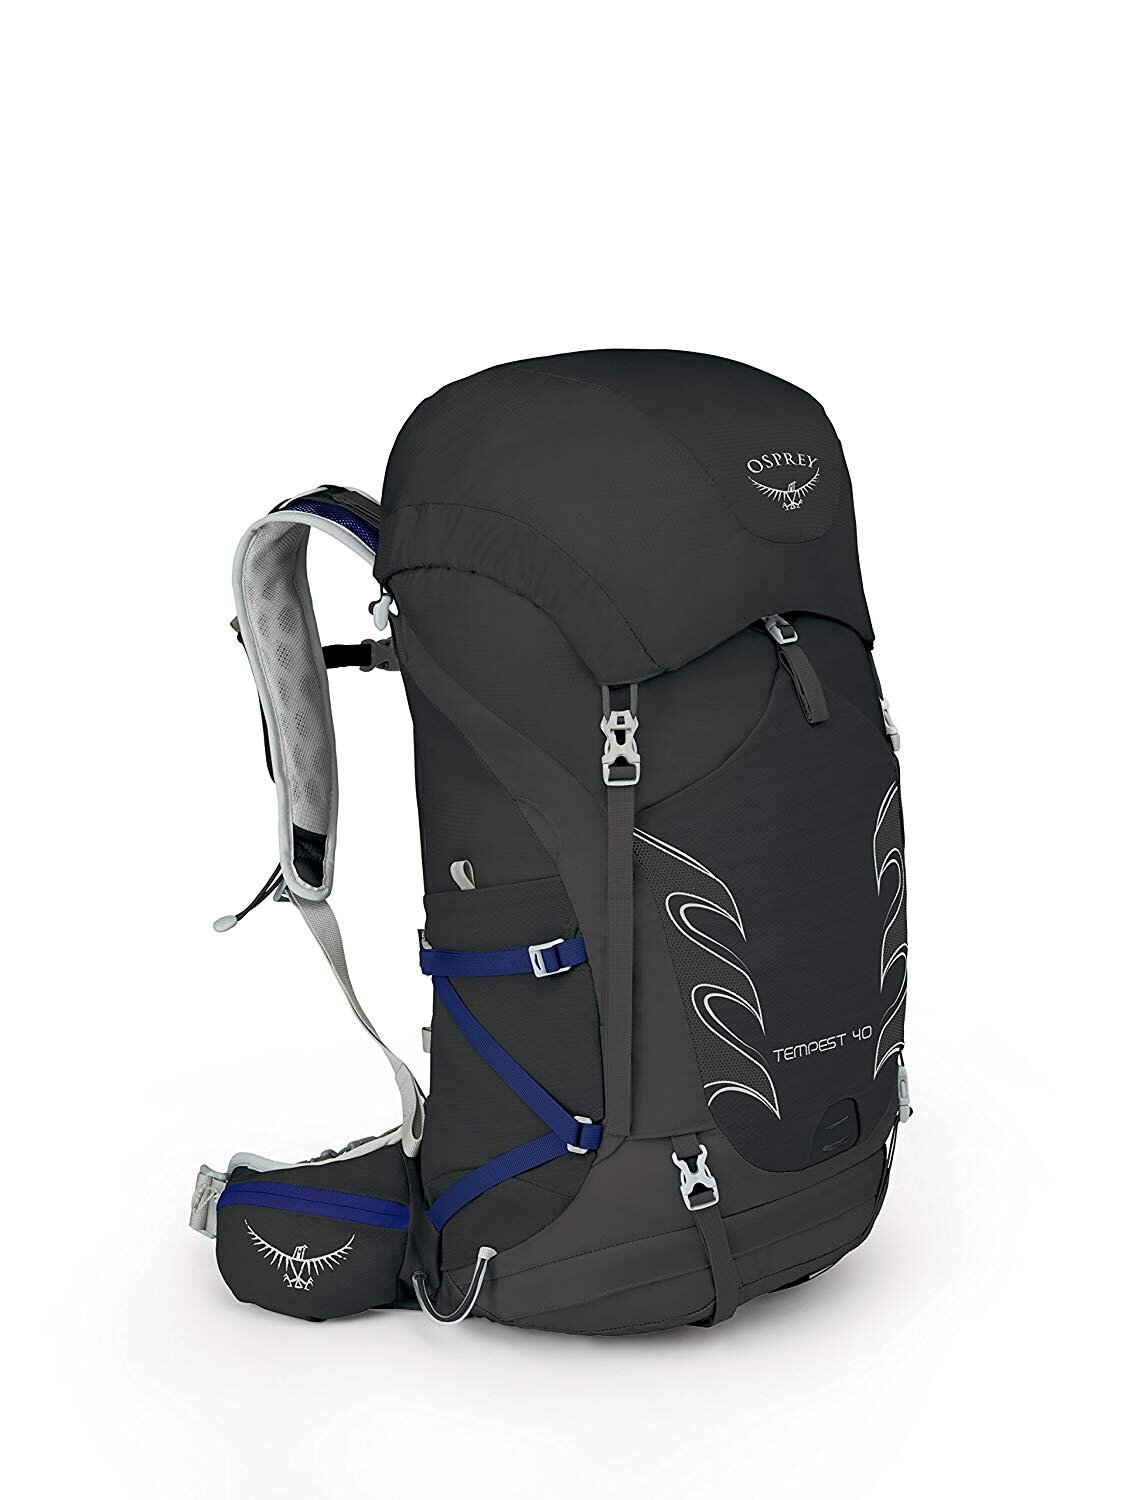 Osprey-backpack.jpg